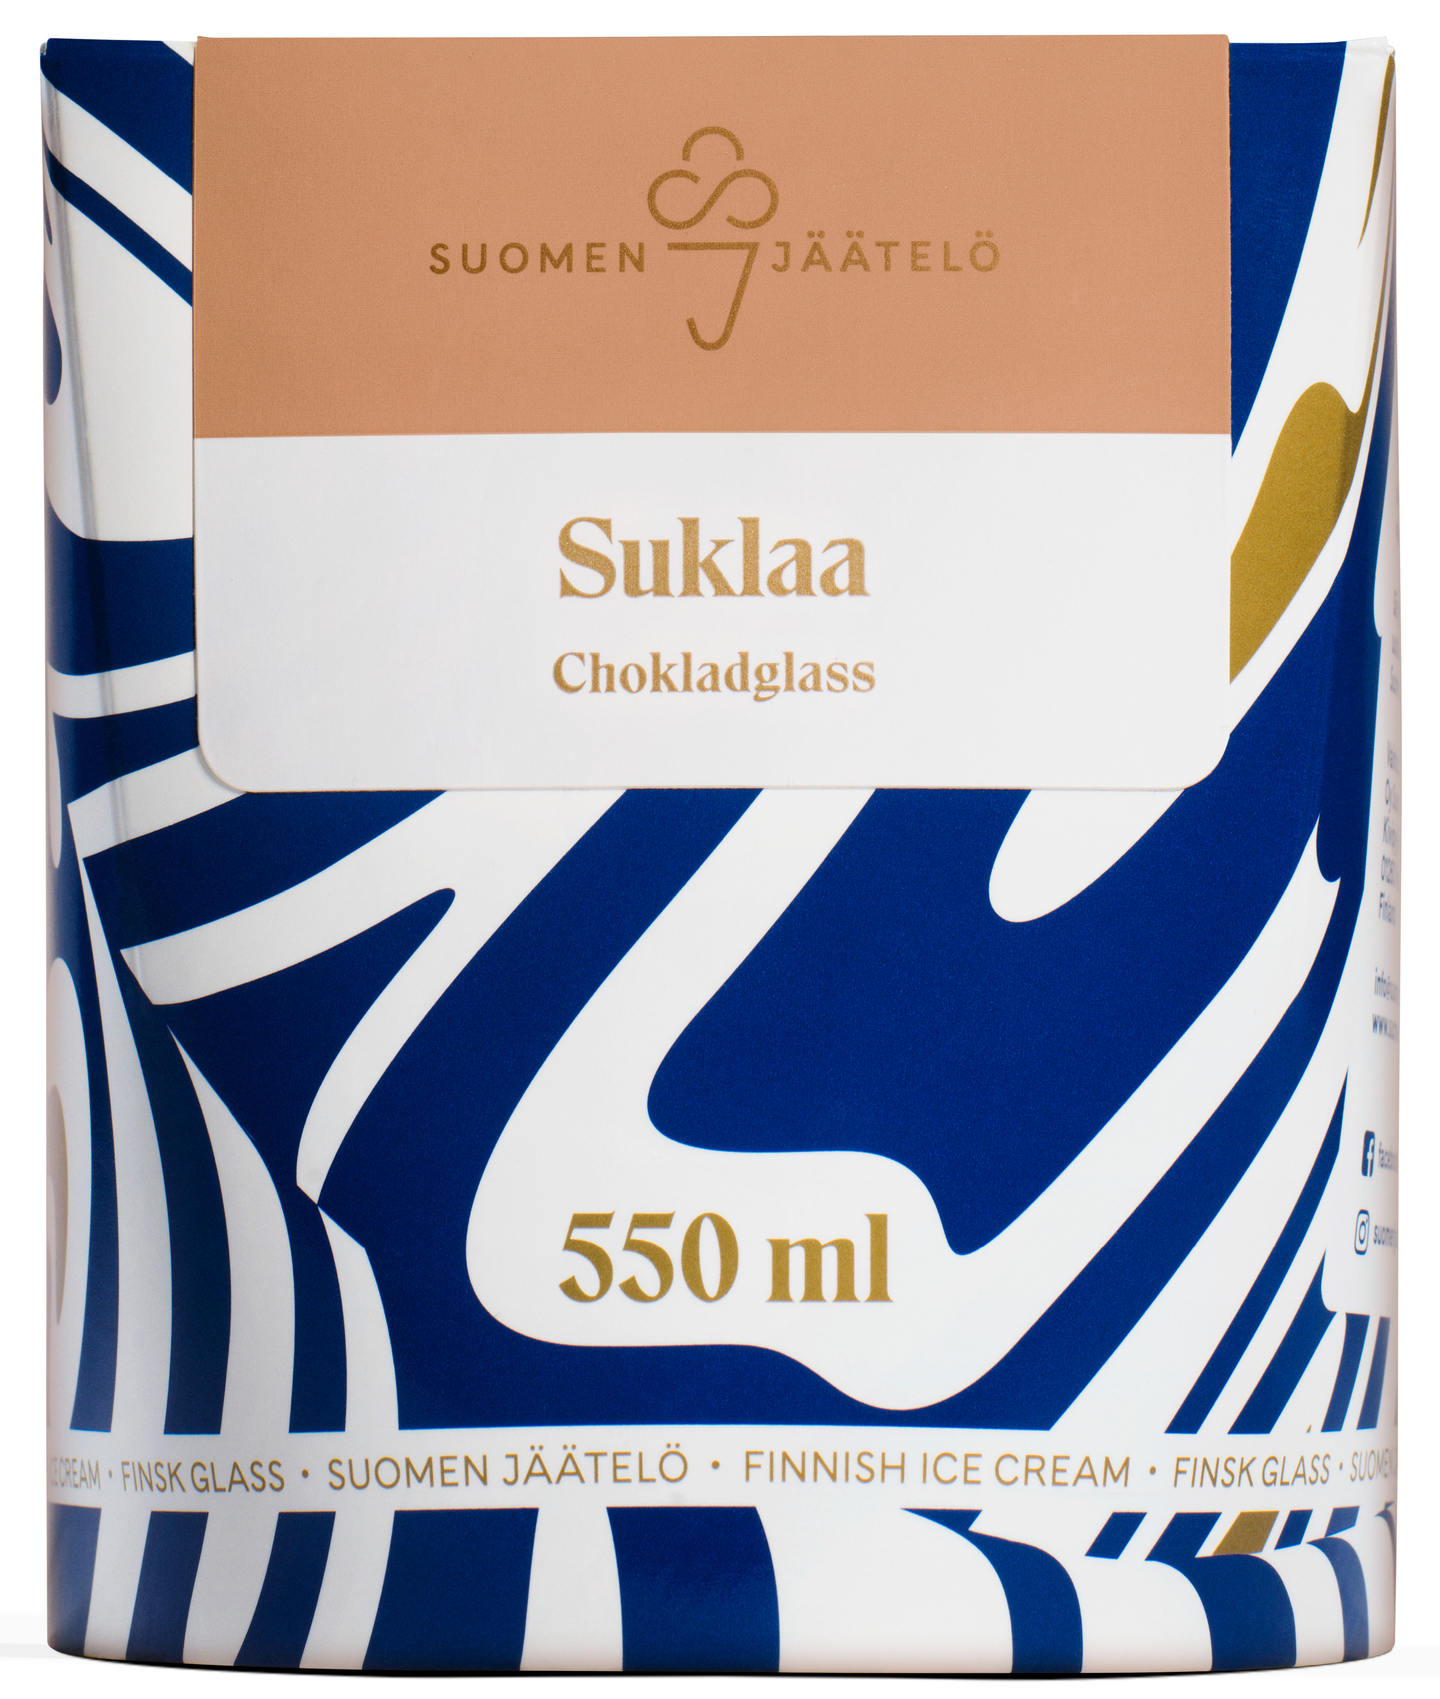 Suomen jäätelö suklaajäätelö 550 ml